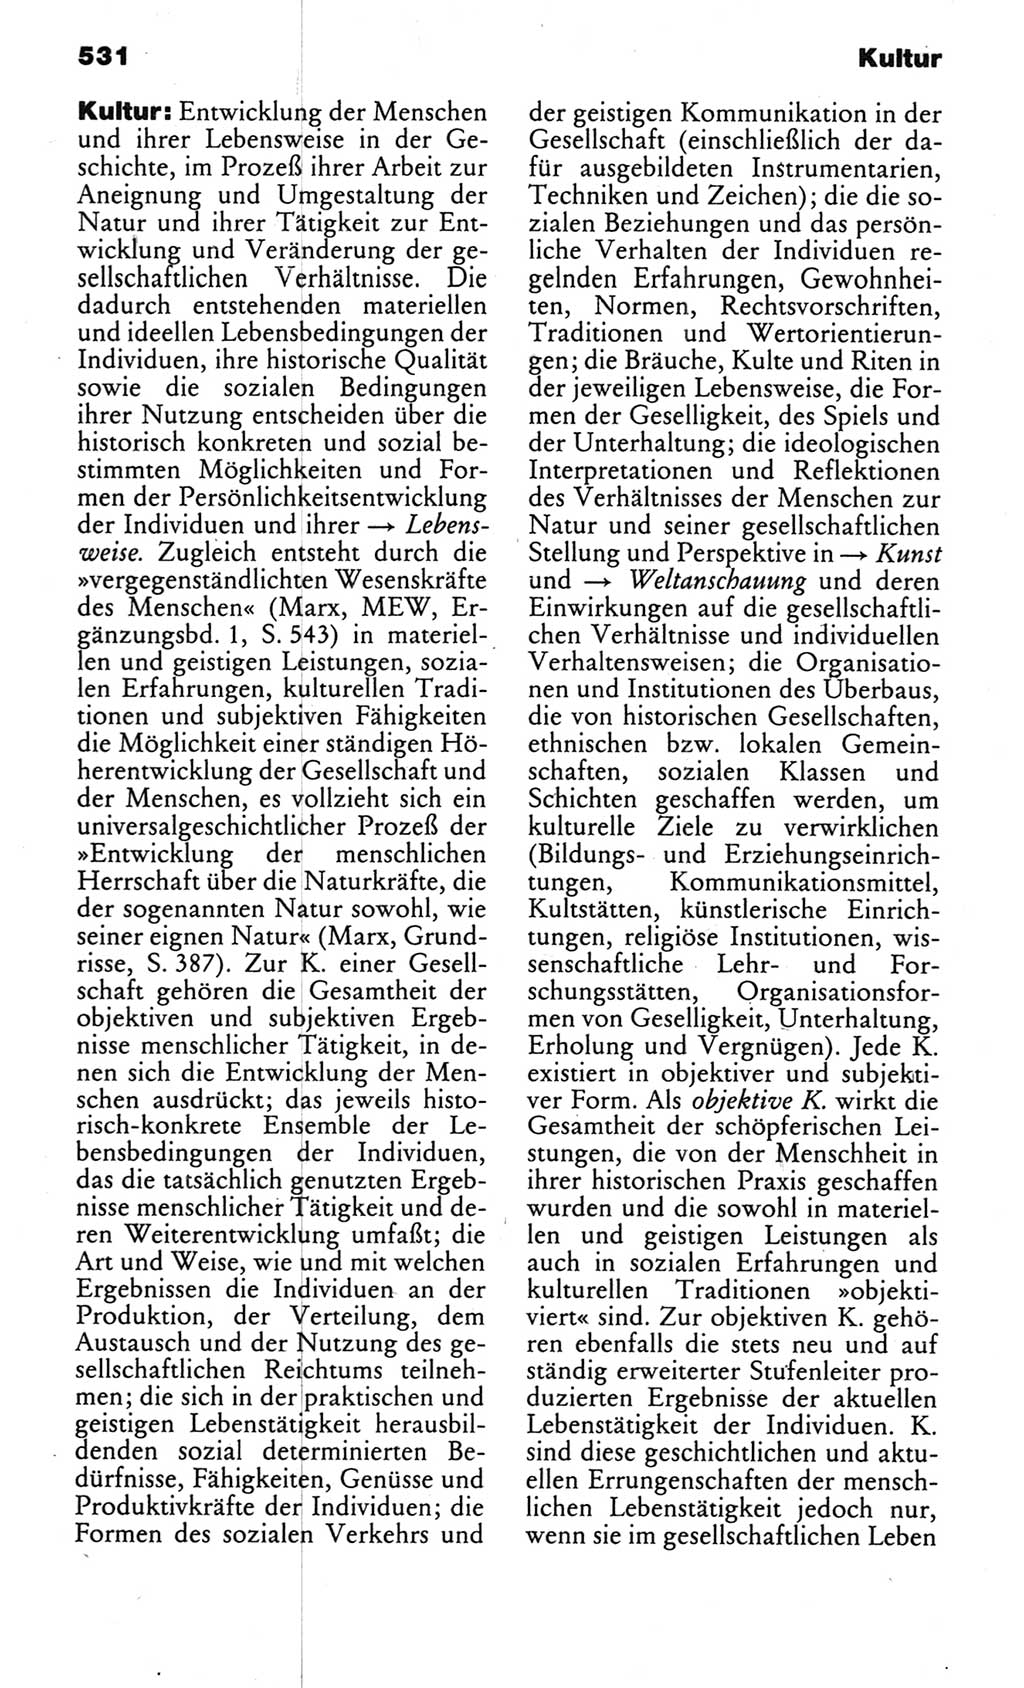 Kleines politisches Wörterbuch [Deutsche Demokratische Republik (DDR)] 1983, Seite 531 (Kl. pol. Wb. DDR 1983, S. 531)